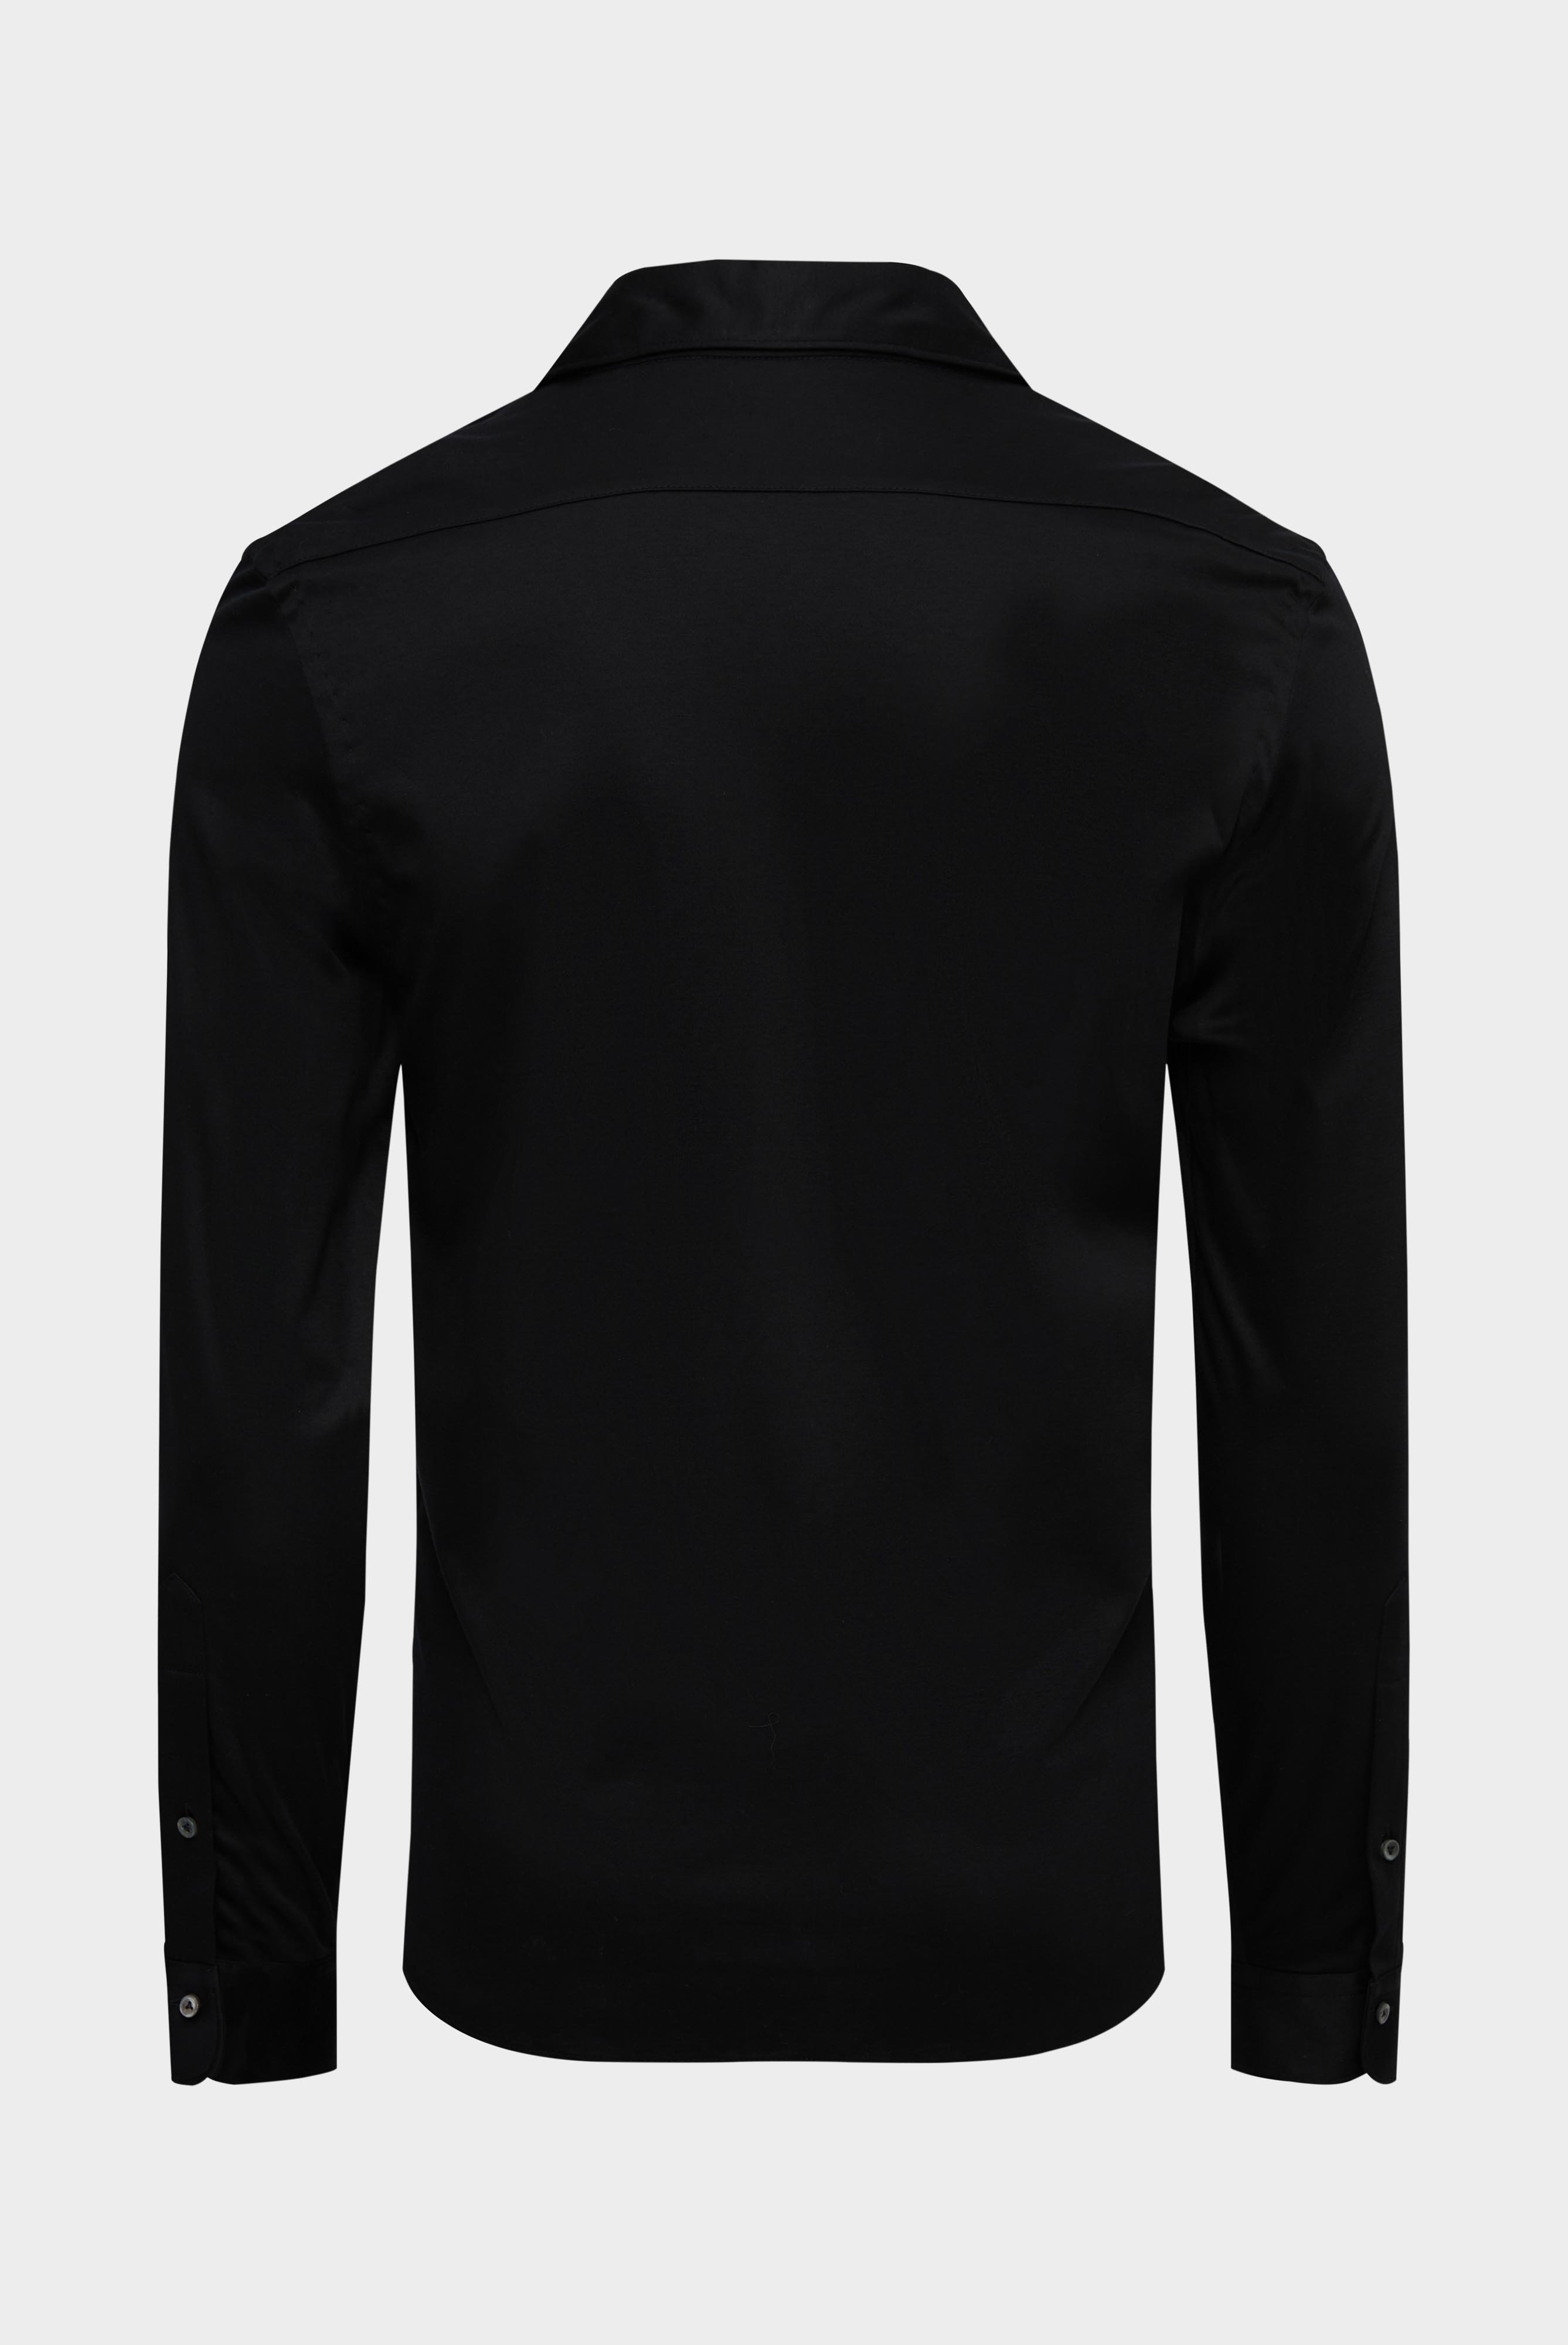 Jersey Hemden+Jersey Hemd aus Schweizer Baumwolle Slim Fit+20.1682.UC.180031.099.XS